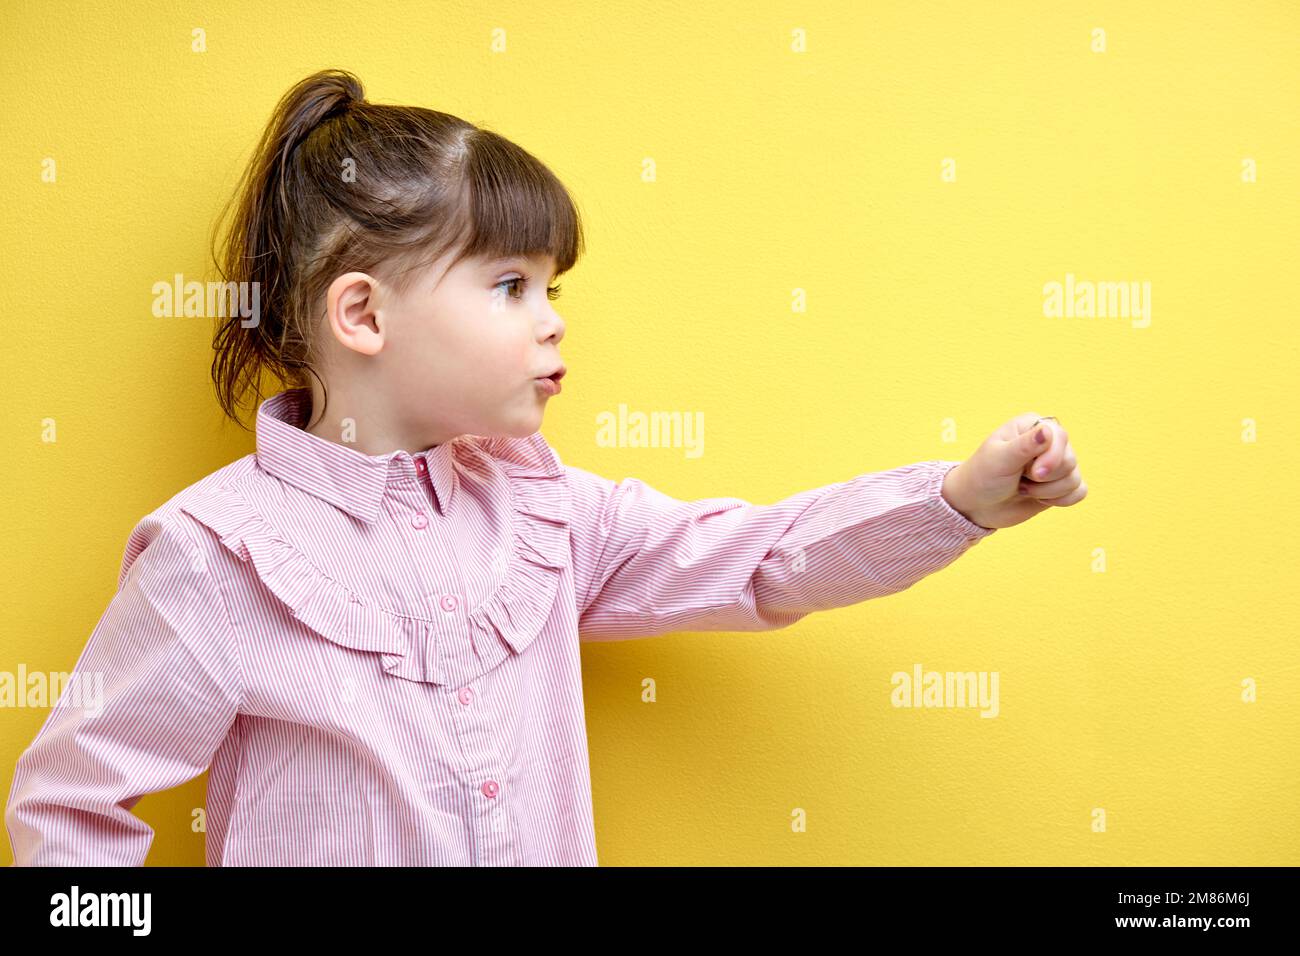 Seitliches Porträt eines Kindes, das zur Seite schaut und spricht, zeigt Hand nach vorne, lustiges und emotionales Kind mit Pferdeschwanz isoliert auf gelbem Hintergrund Stockfoto